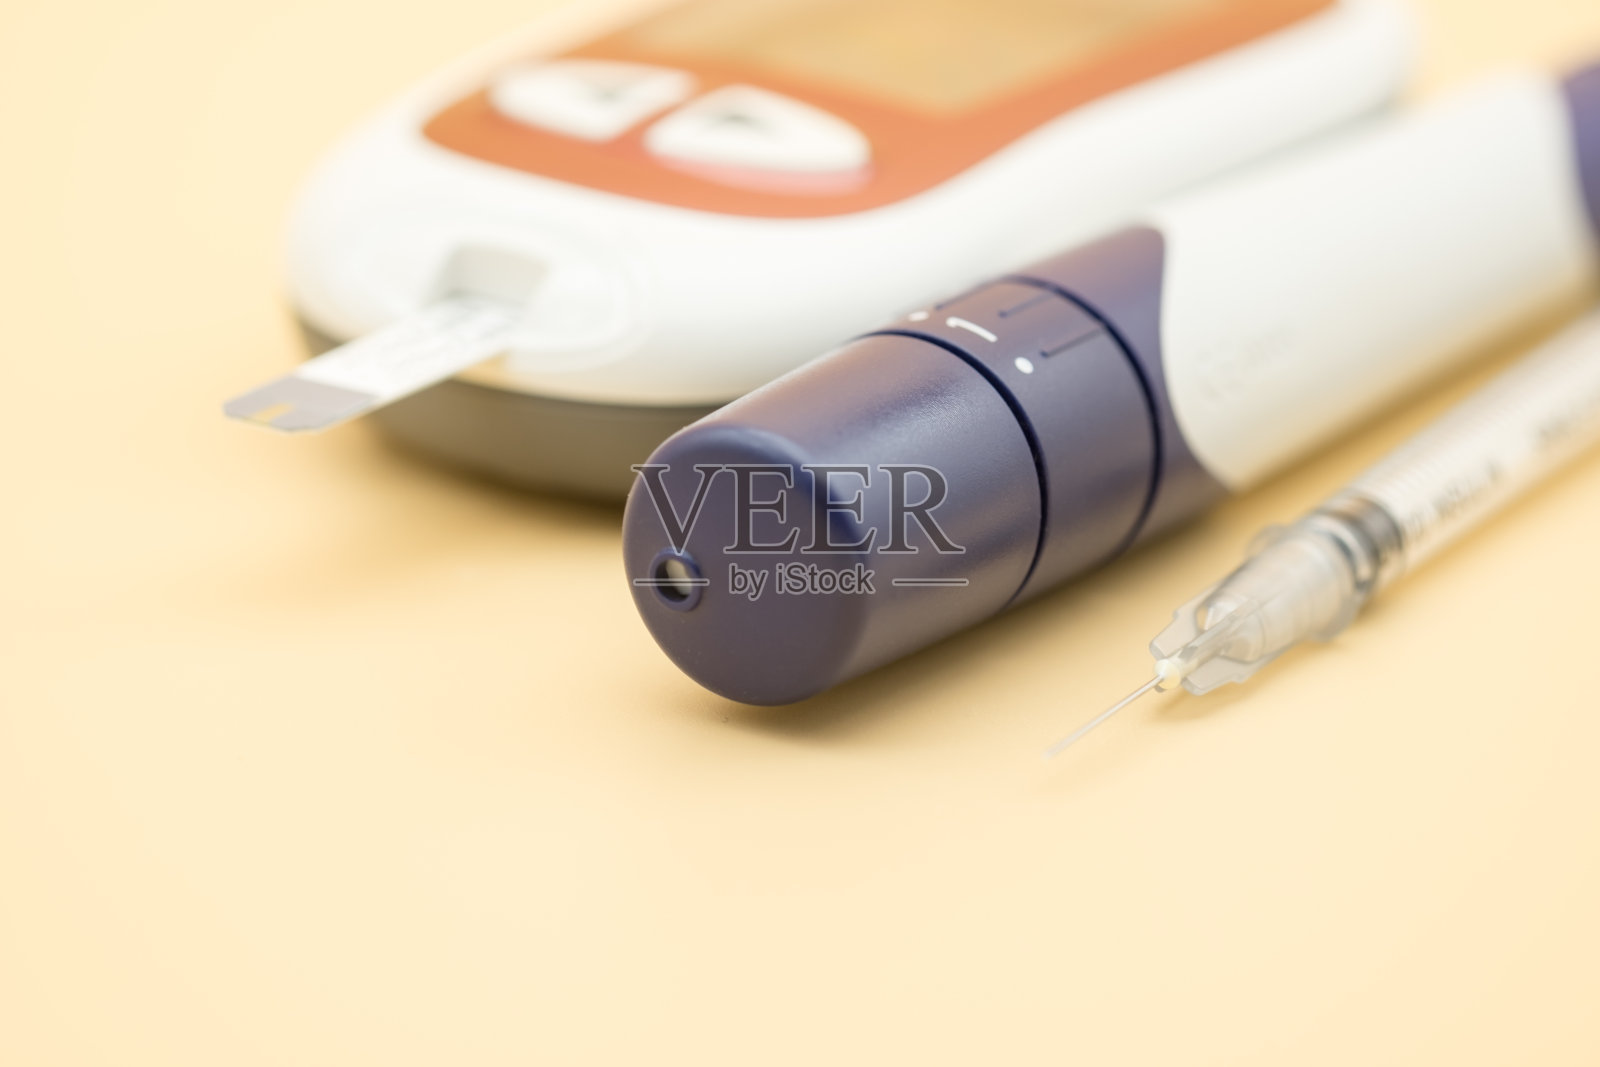 胰岛素注射器和血糖仪的关闭与柳叶刀检查血糖水平橙色背景作为药物，糖尿病，血糖，保健和人的概念照片摄影图片